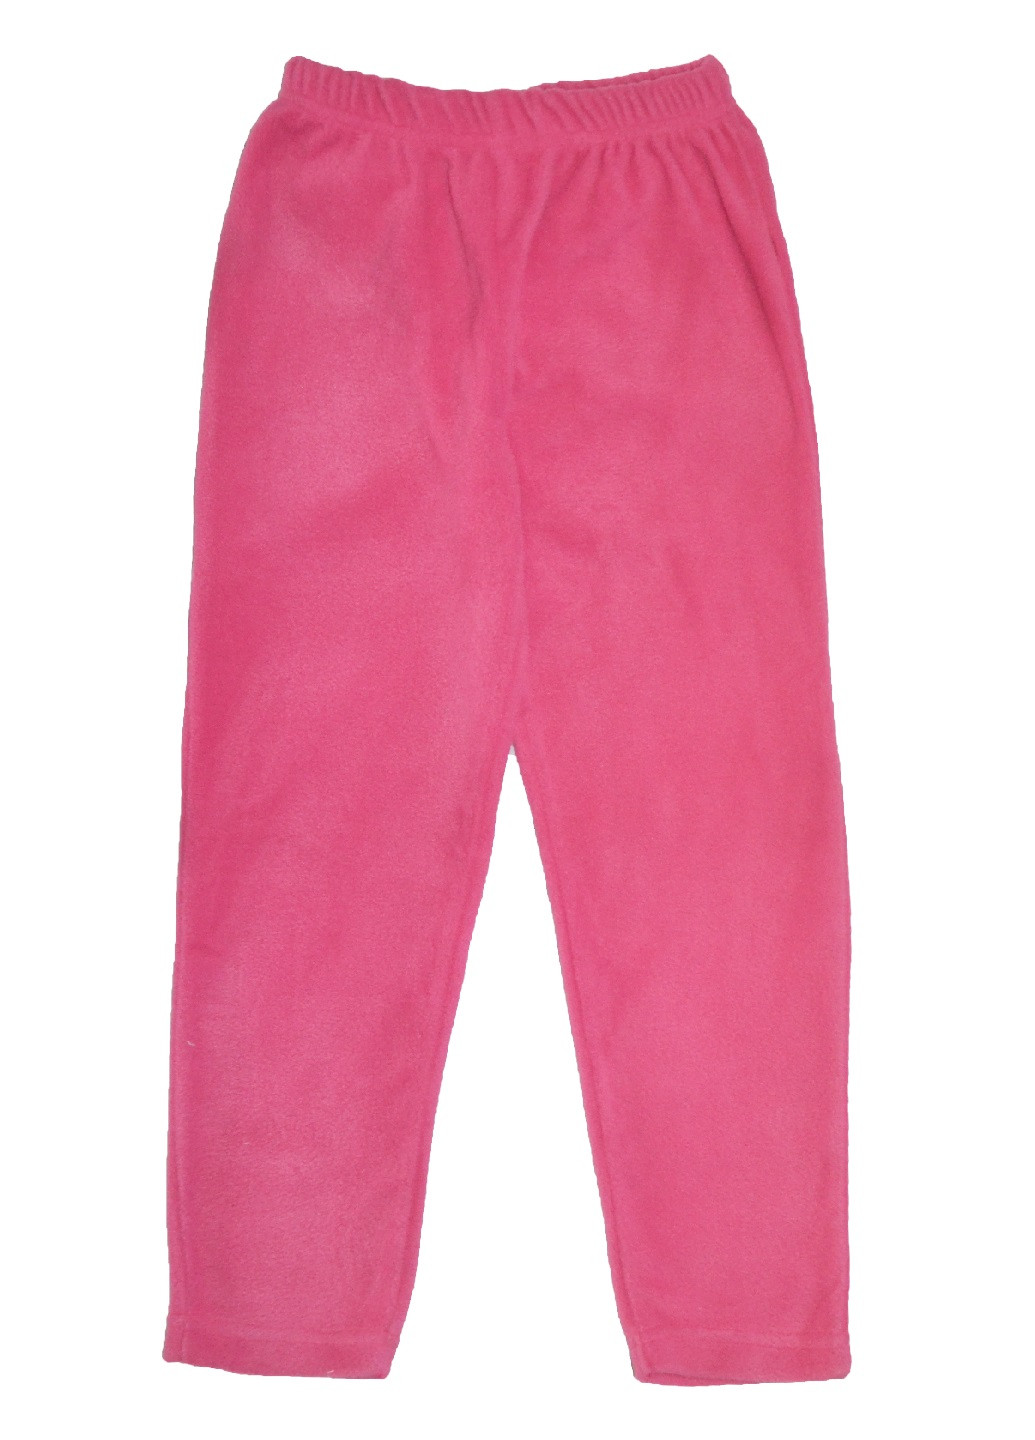 Розовые домашние демисезонные прямые брюки Young Style